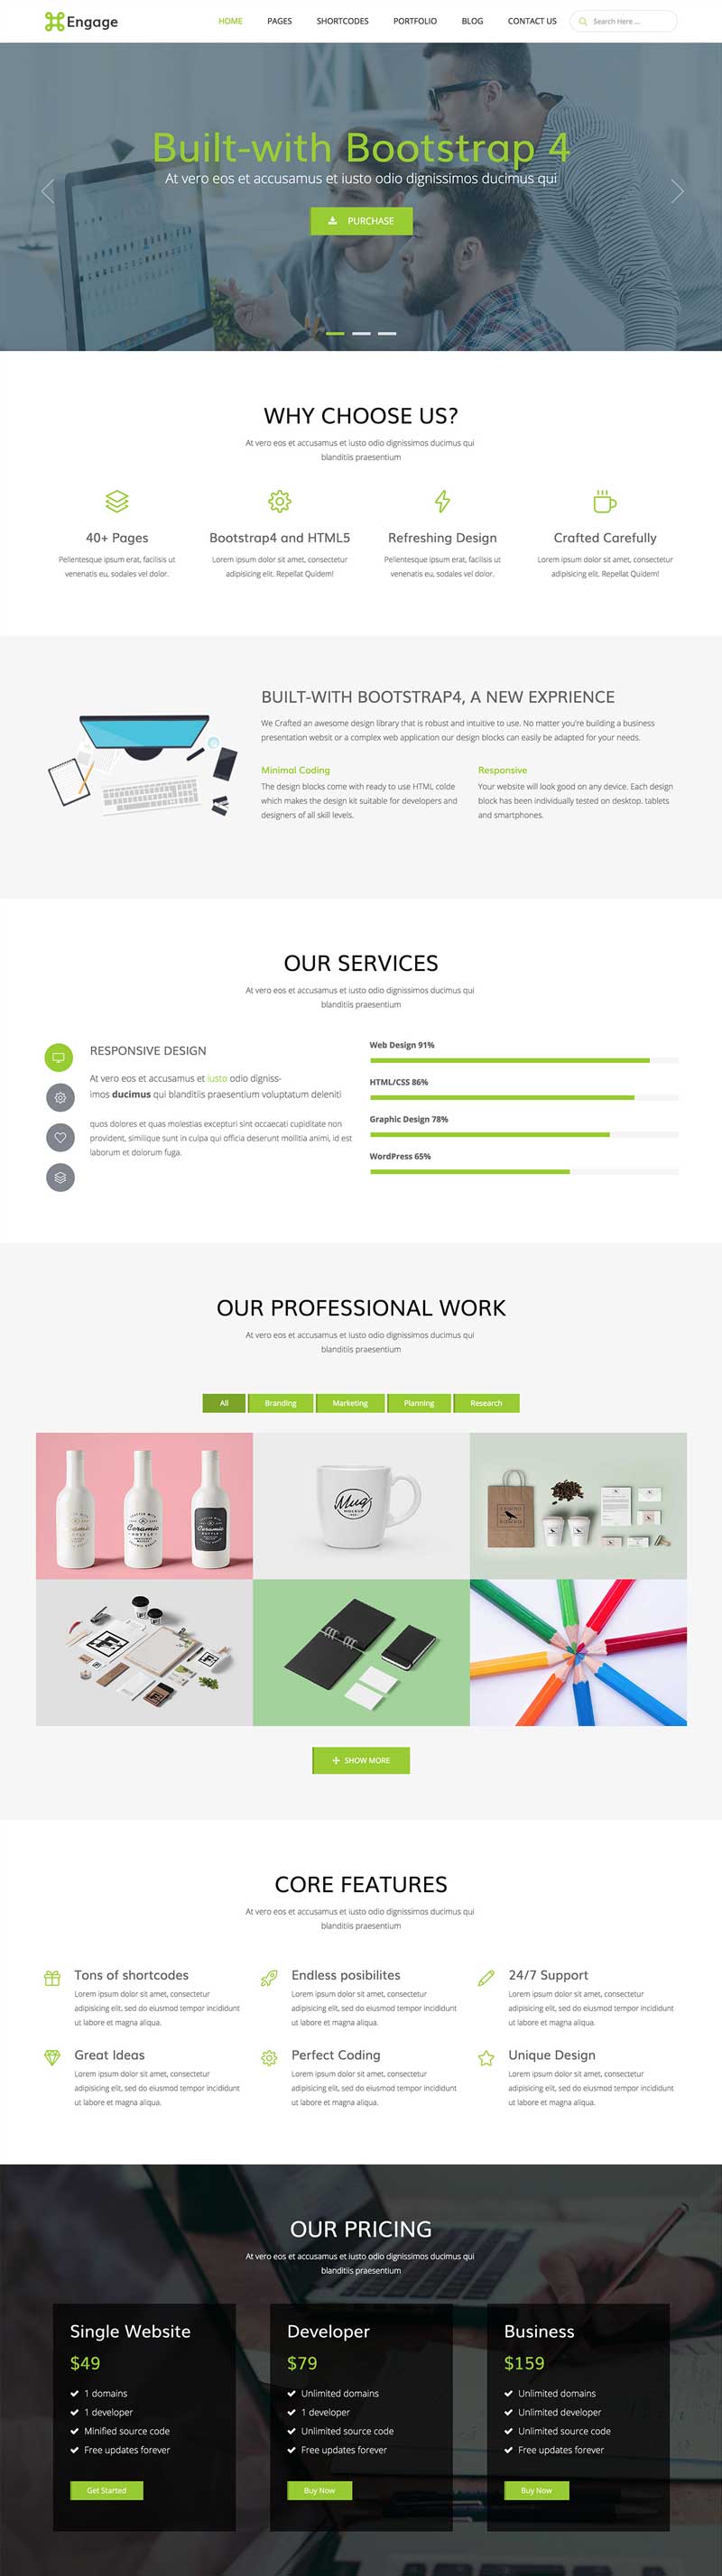 绿色响应式的广告设计公司网站ui模板下载